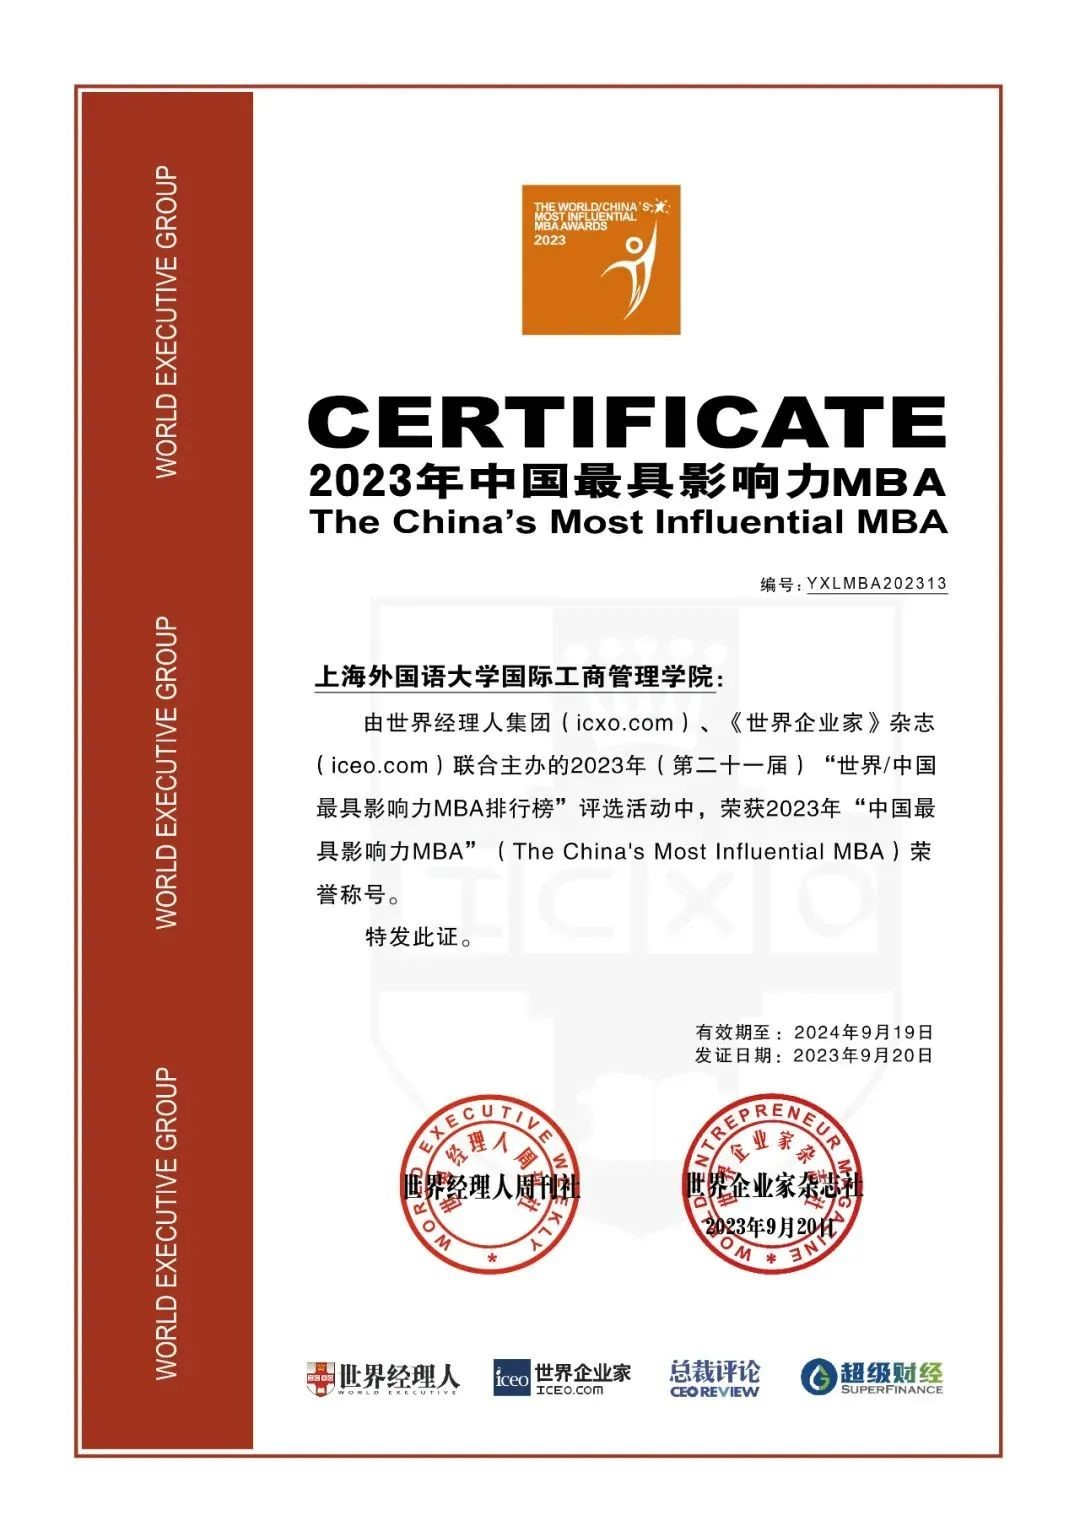 上海外国语大学MBA荣获“中国最具影响力MBA排行榜”第13位